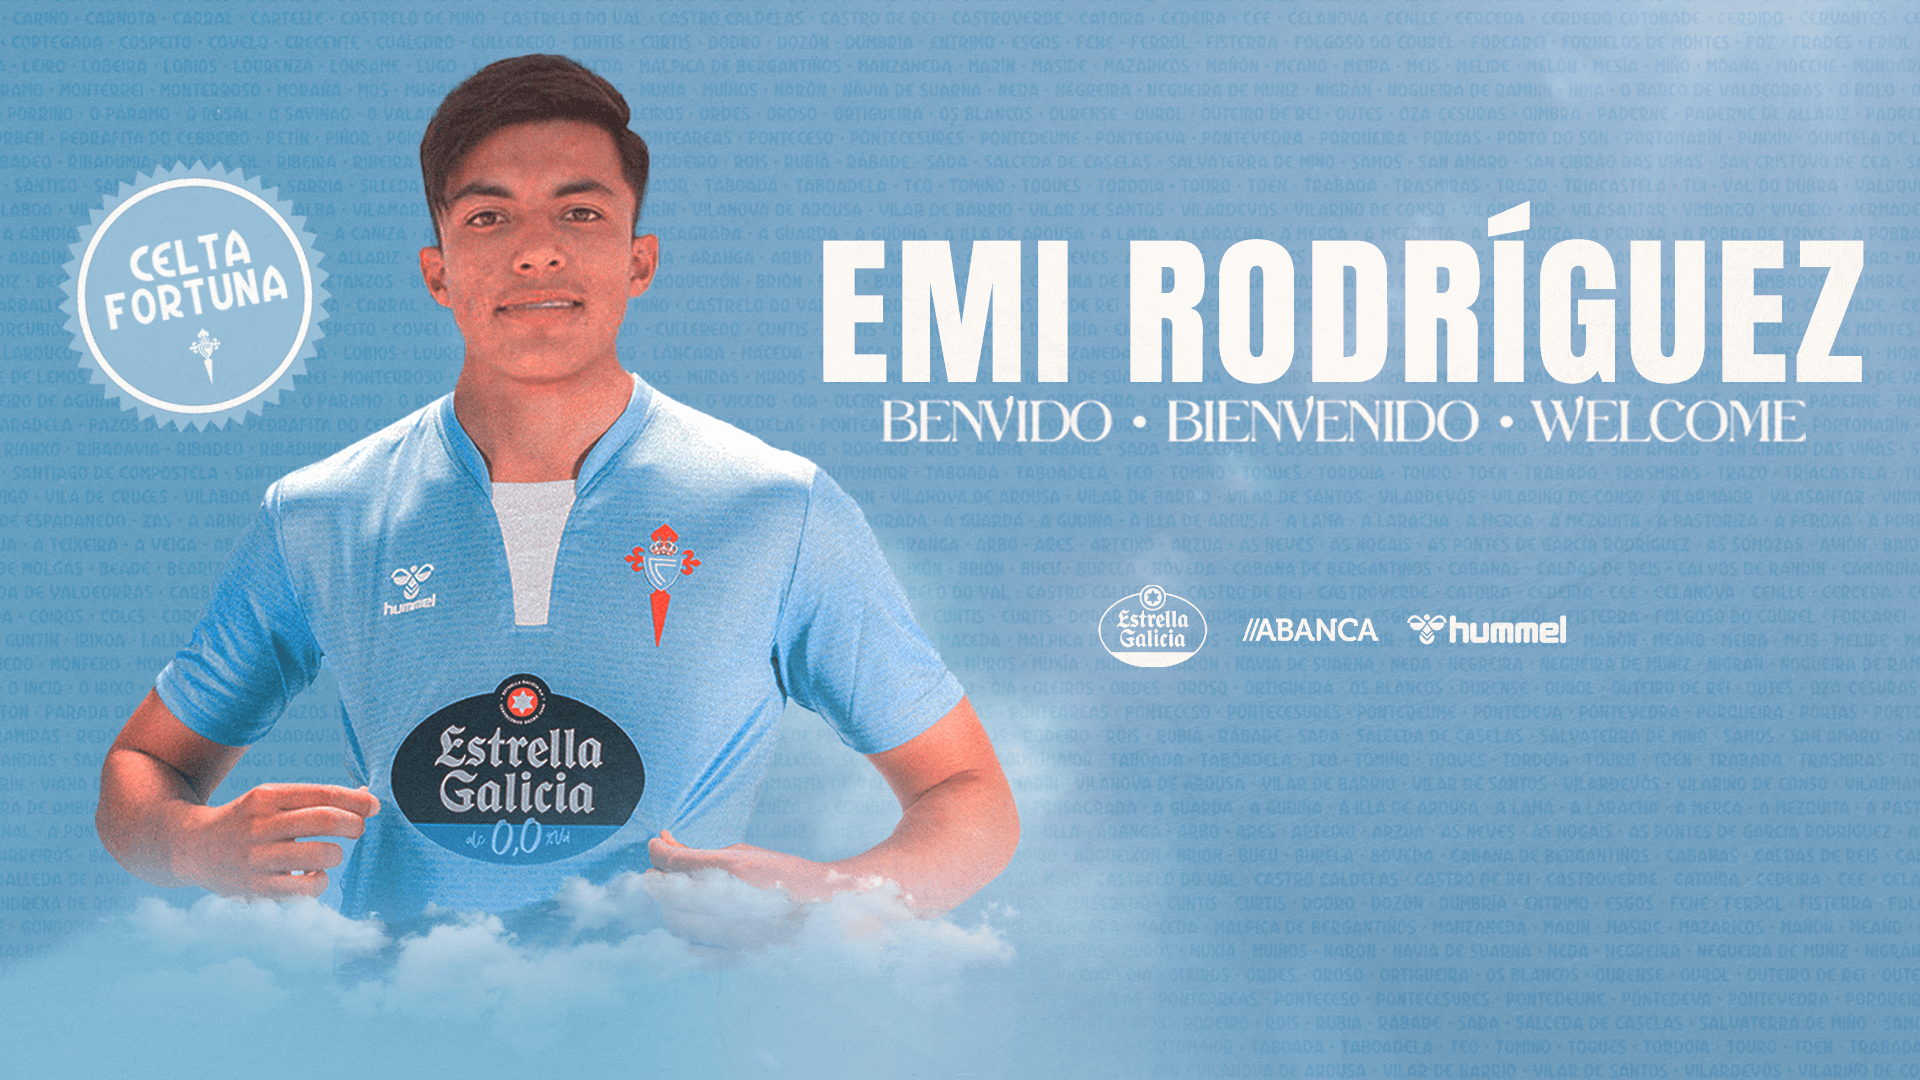 Emi Rodríguez, nuevo jugador del Celta Fortuna.